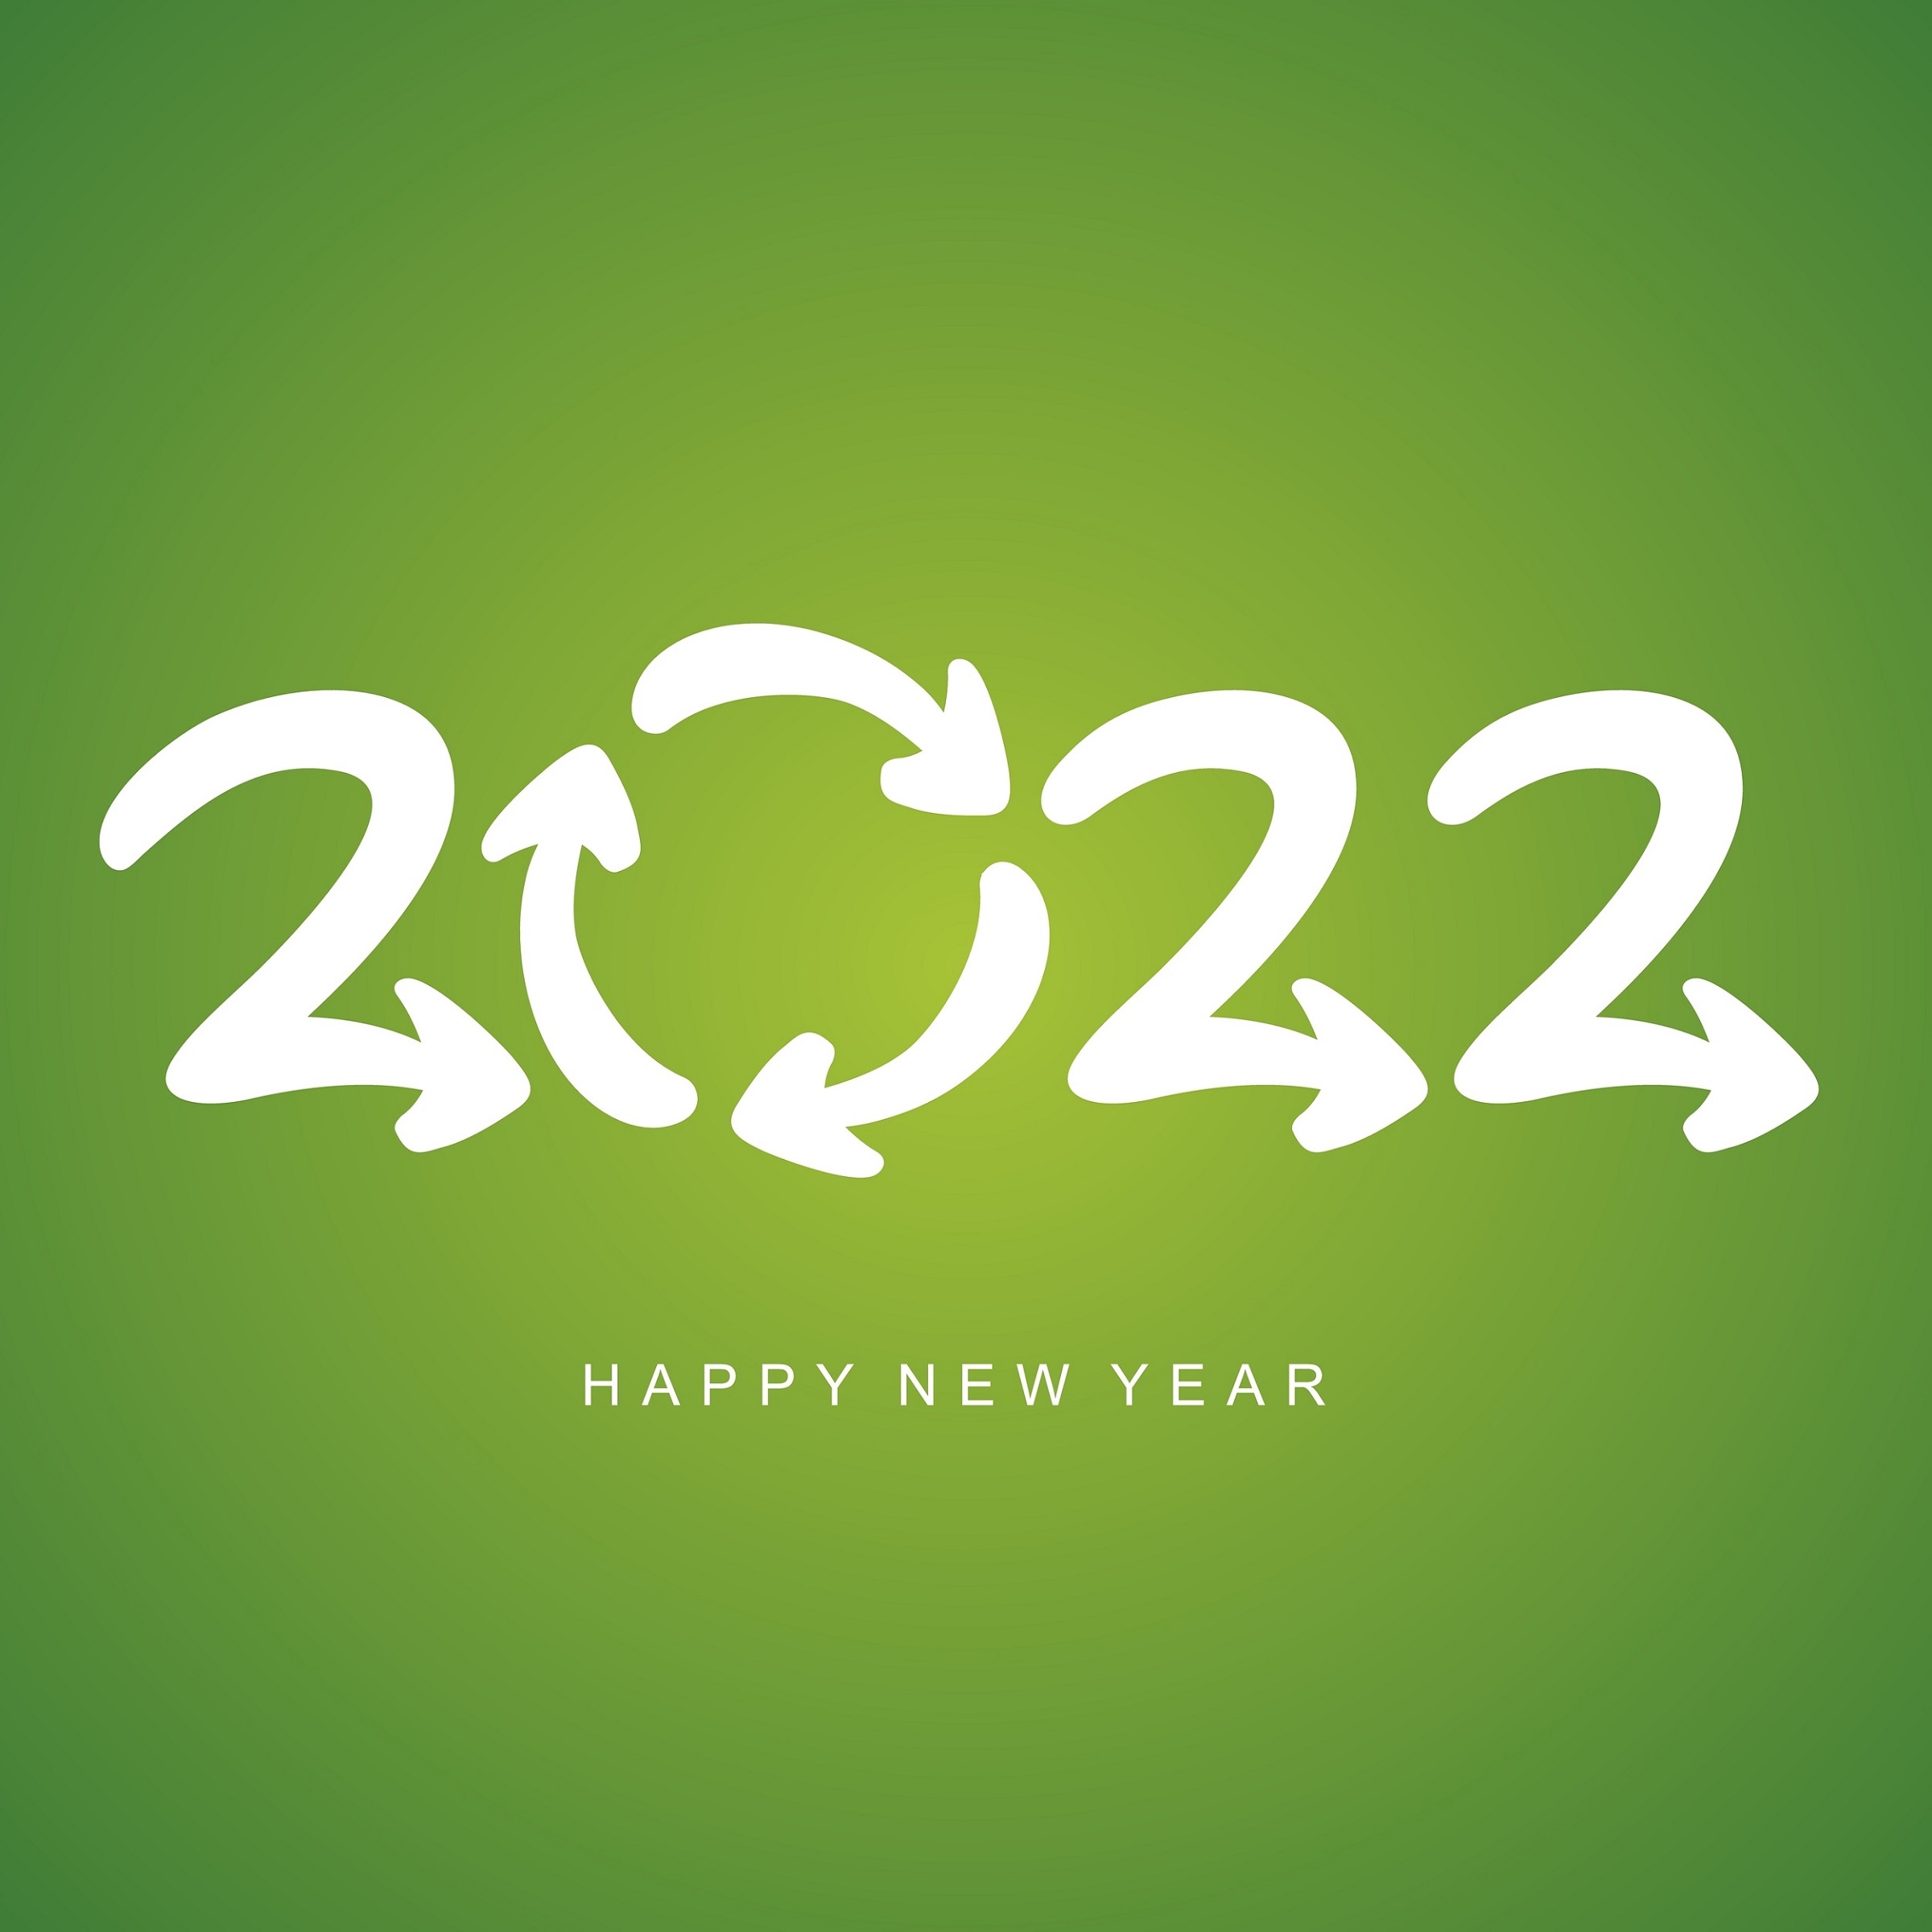 Beste Wünsche 2021